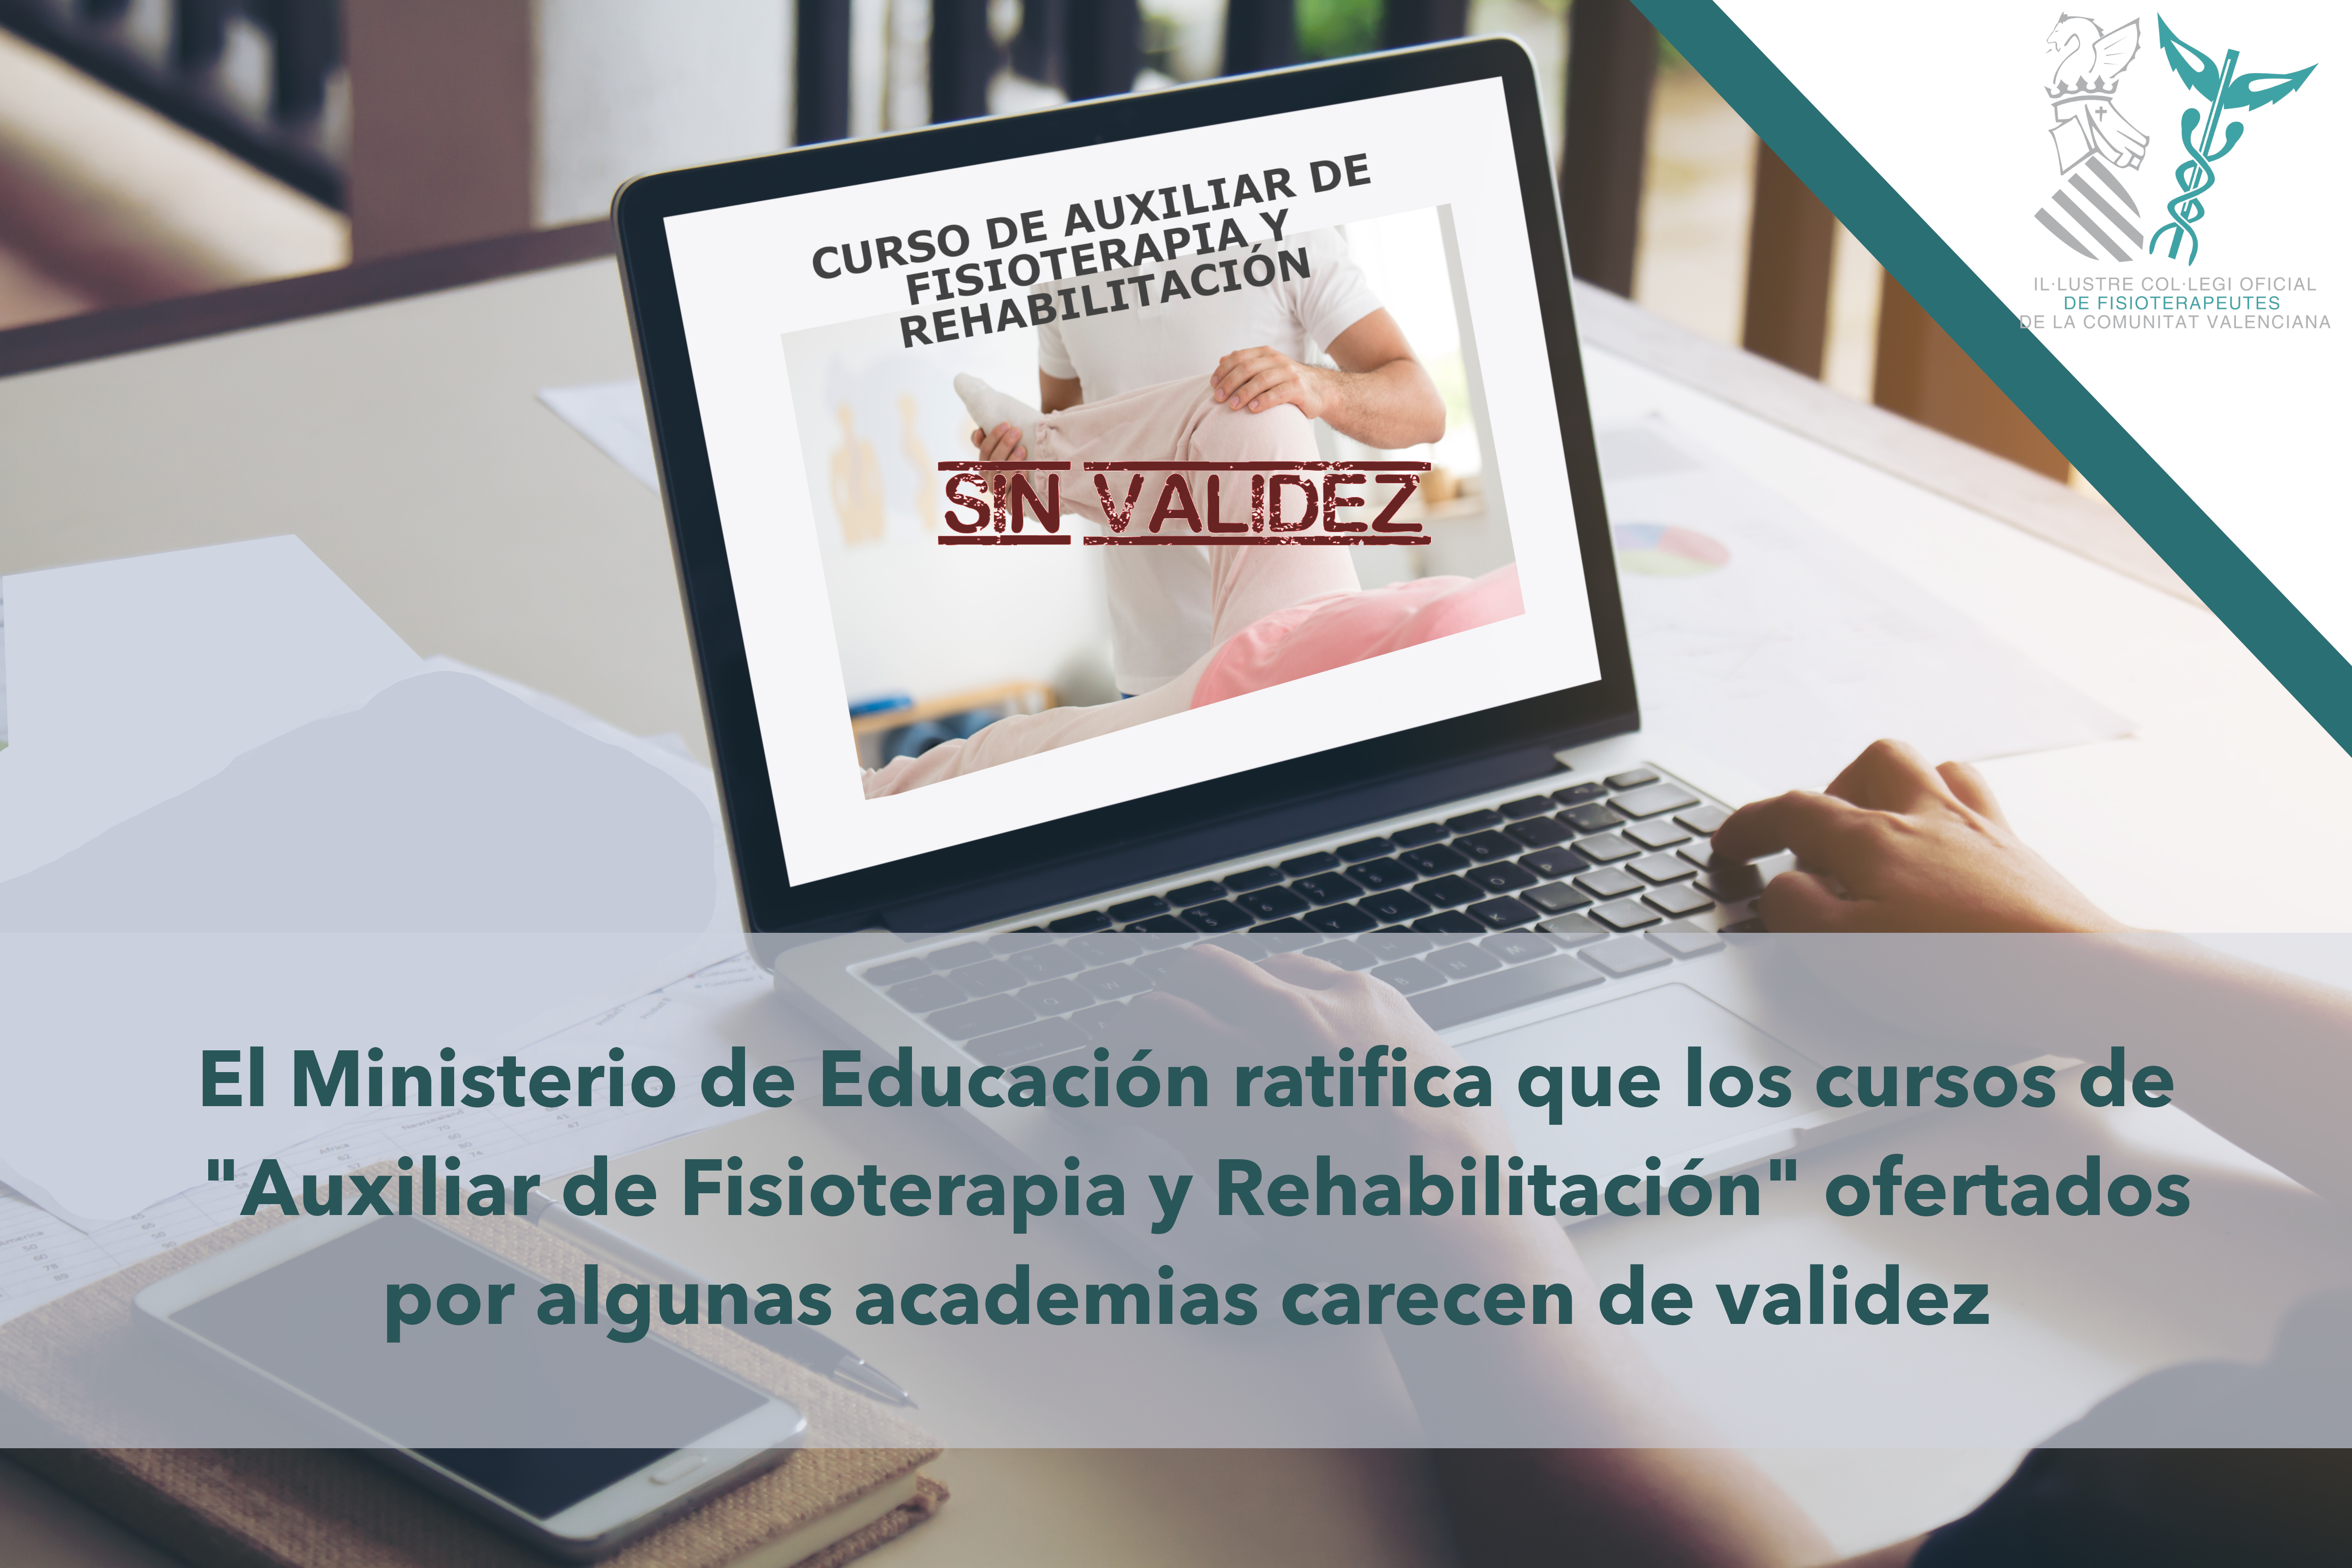 El Ministerio de Educación ratifica que los cursos de “Auxiliar de Fisioterapia y Rehabilitación” ofertados por algunas academias carecen de validez